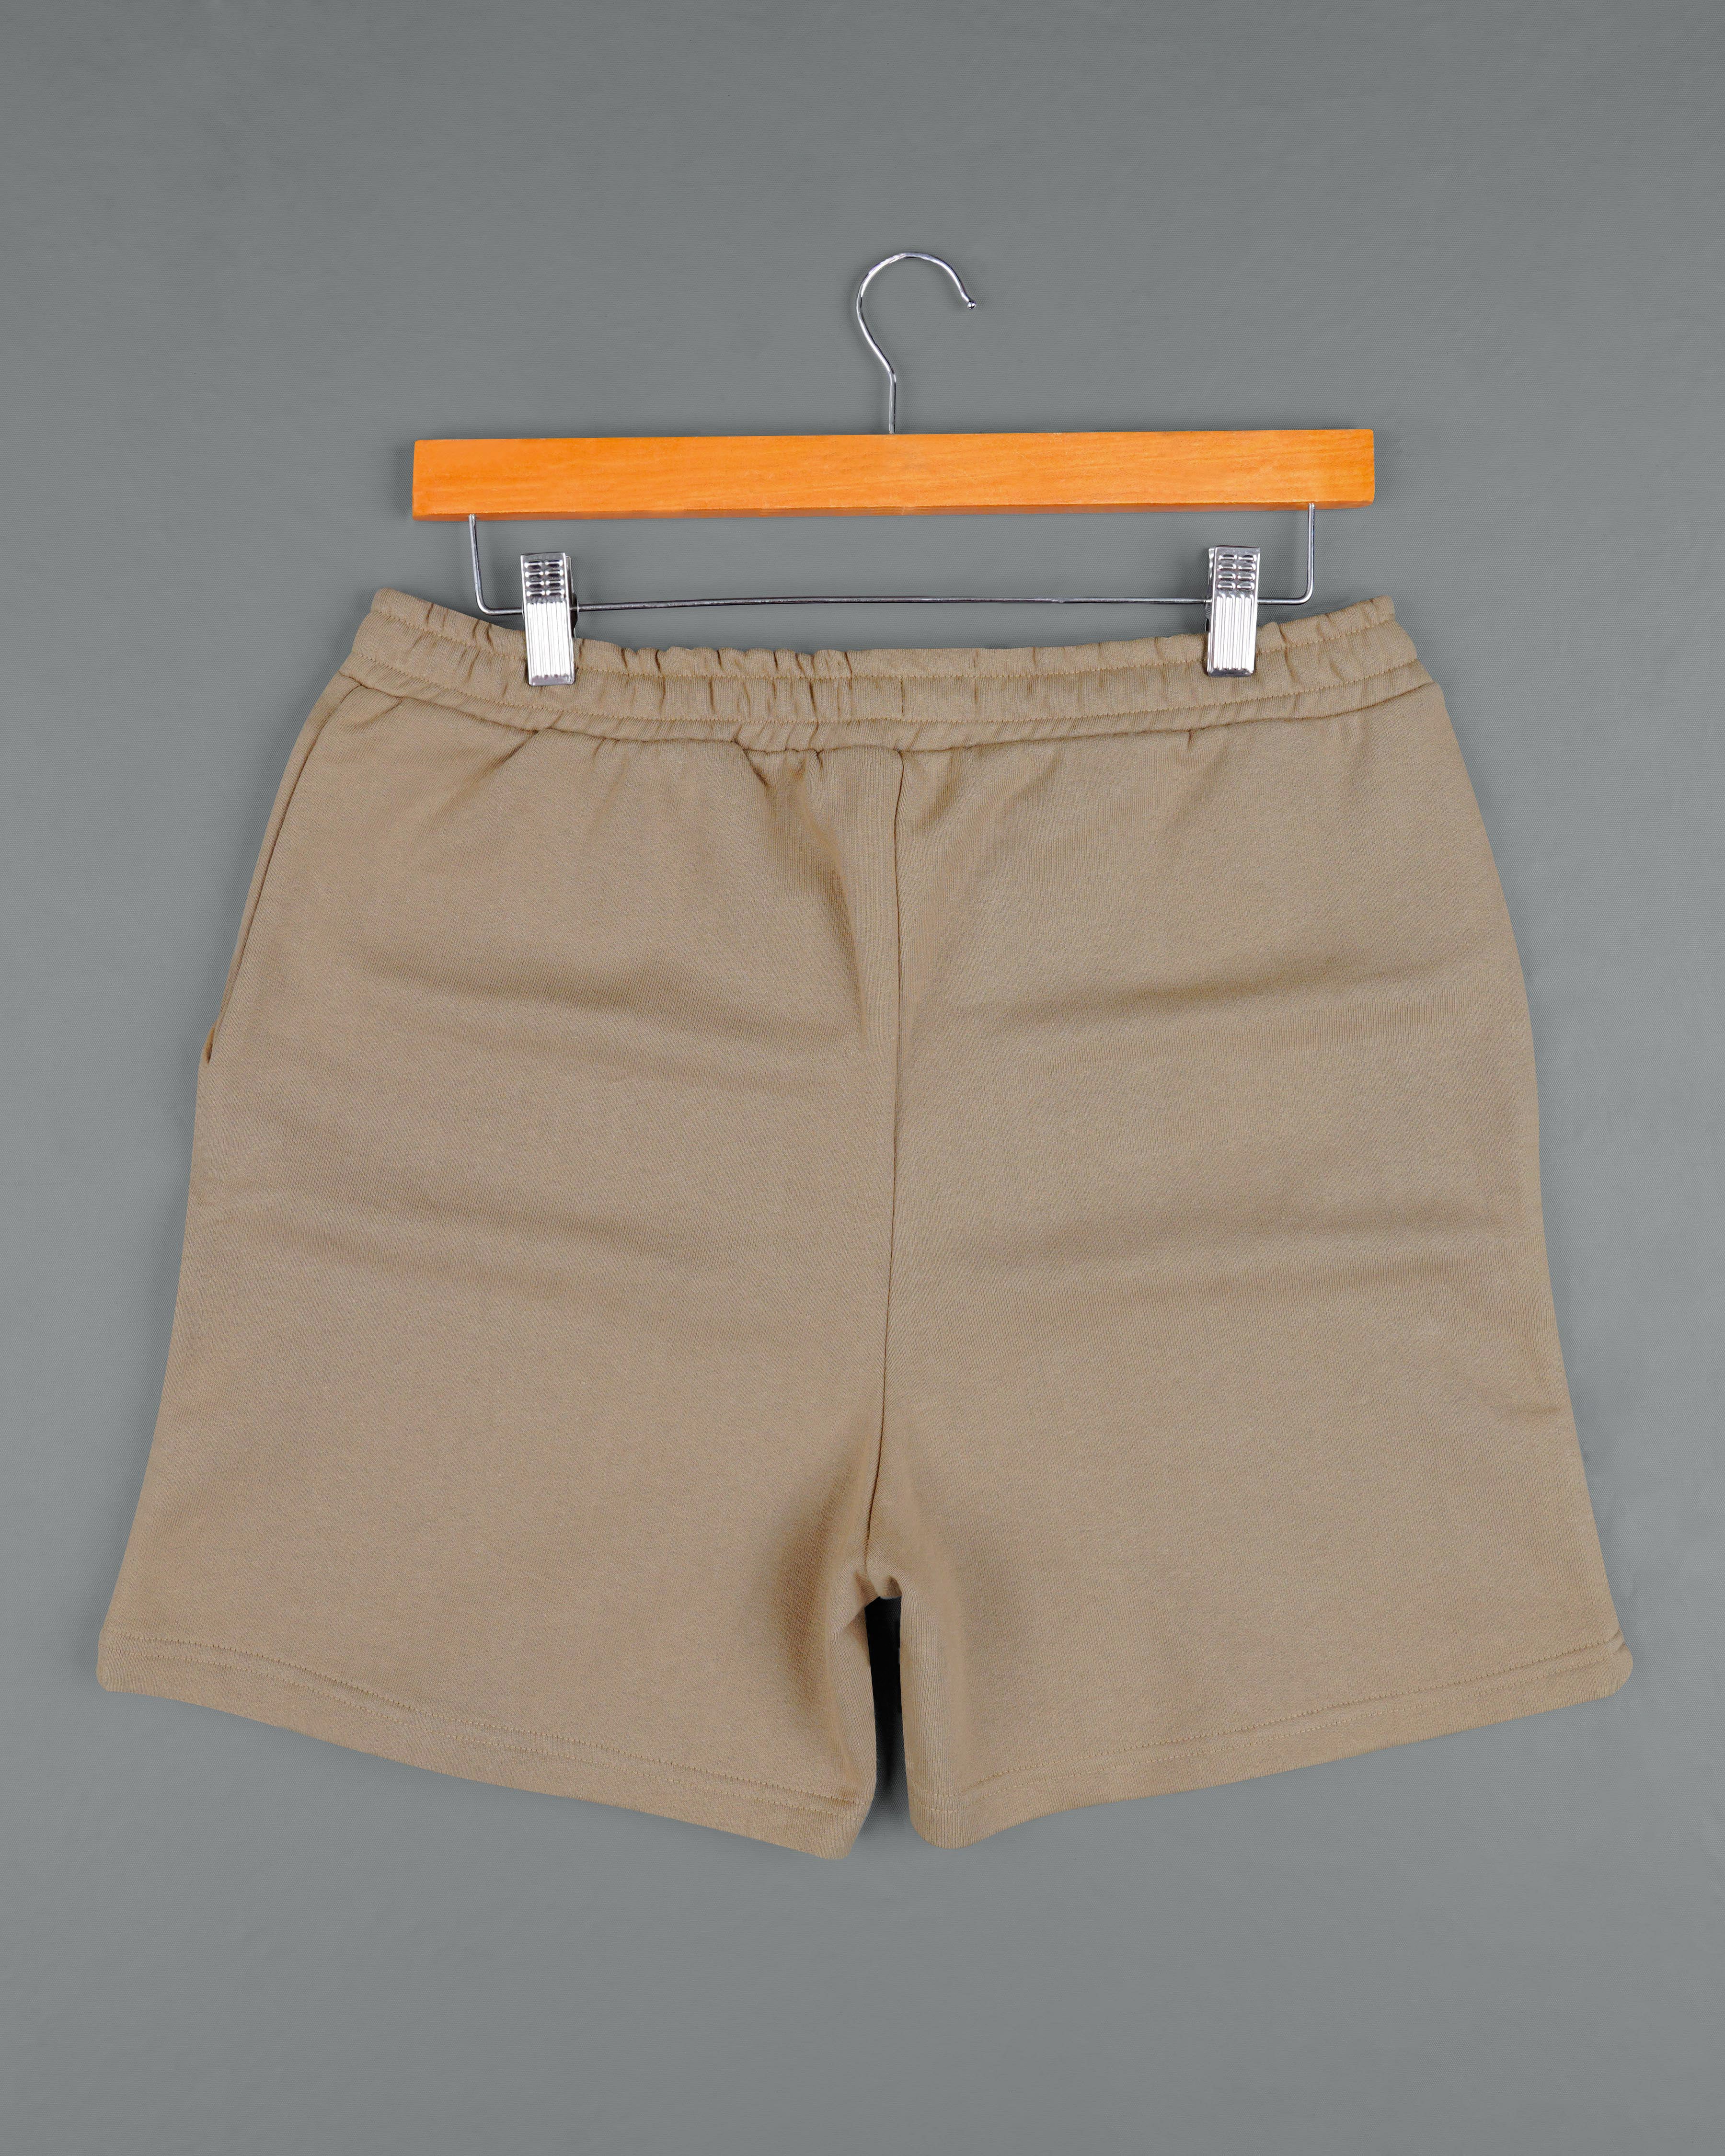 Shadow Brown Premium Cotton Sweatshirt with Shorts Combo TS616-SR173-S, TS616-SR173-M, TS616-SR173-L, TS616-SR173-XL, TS616-SR173-XXL